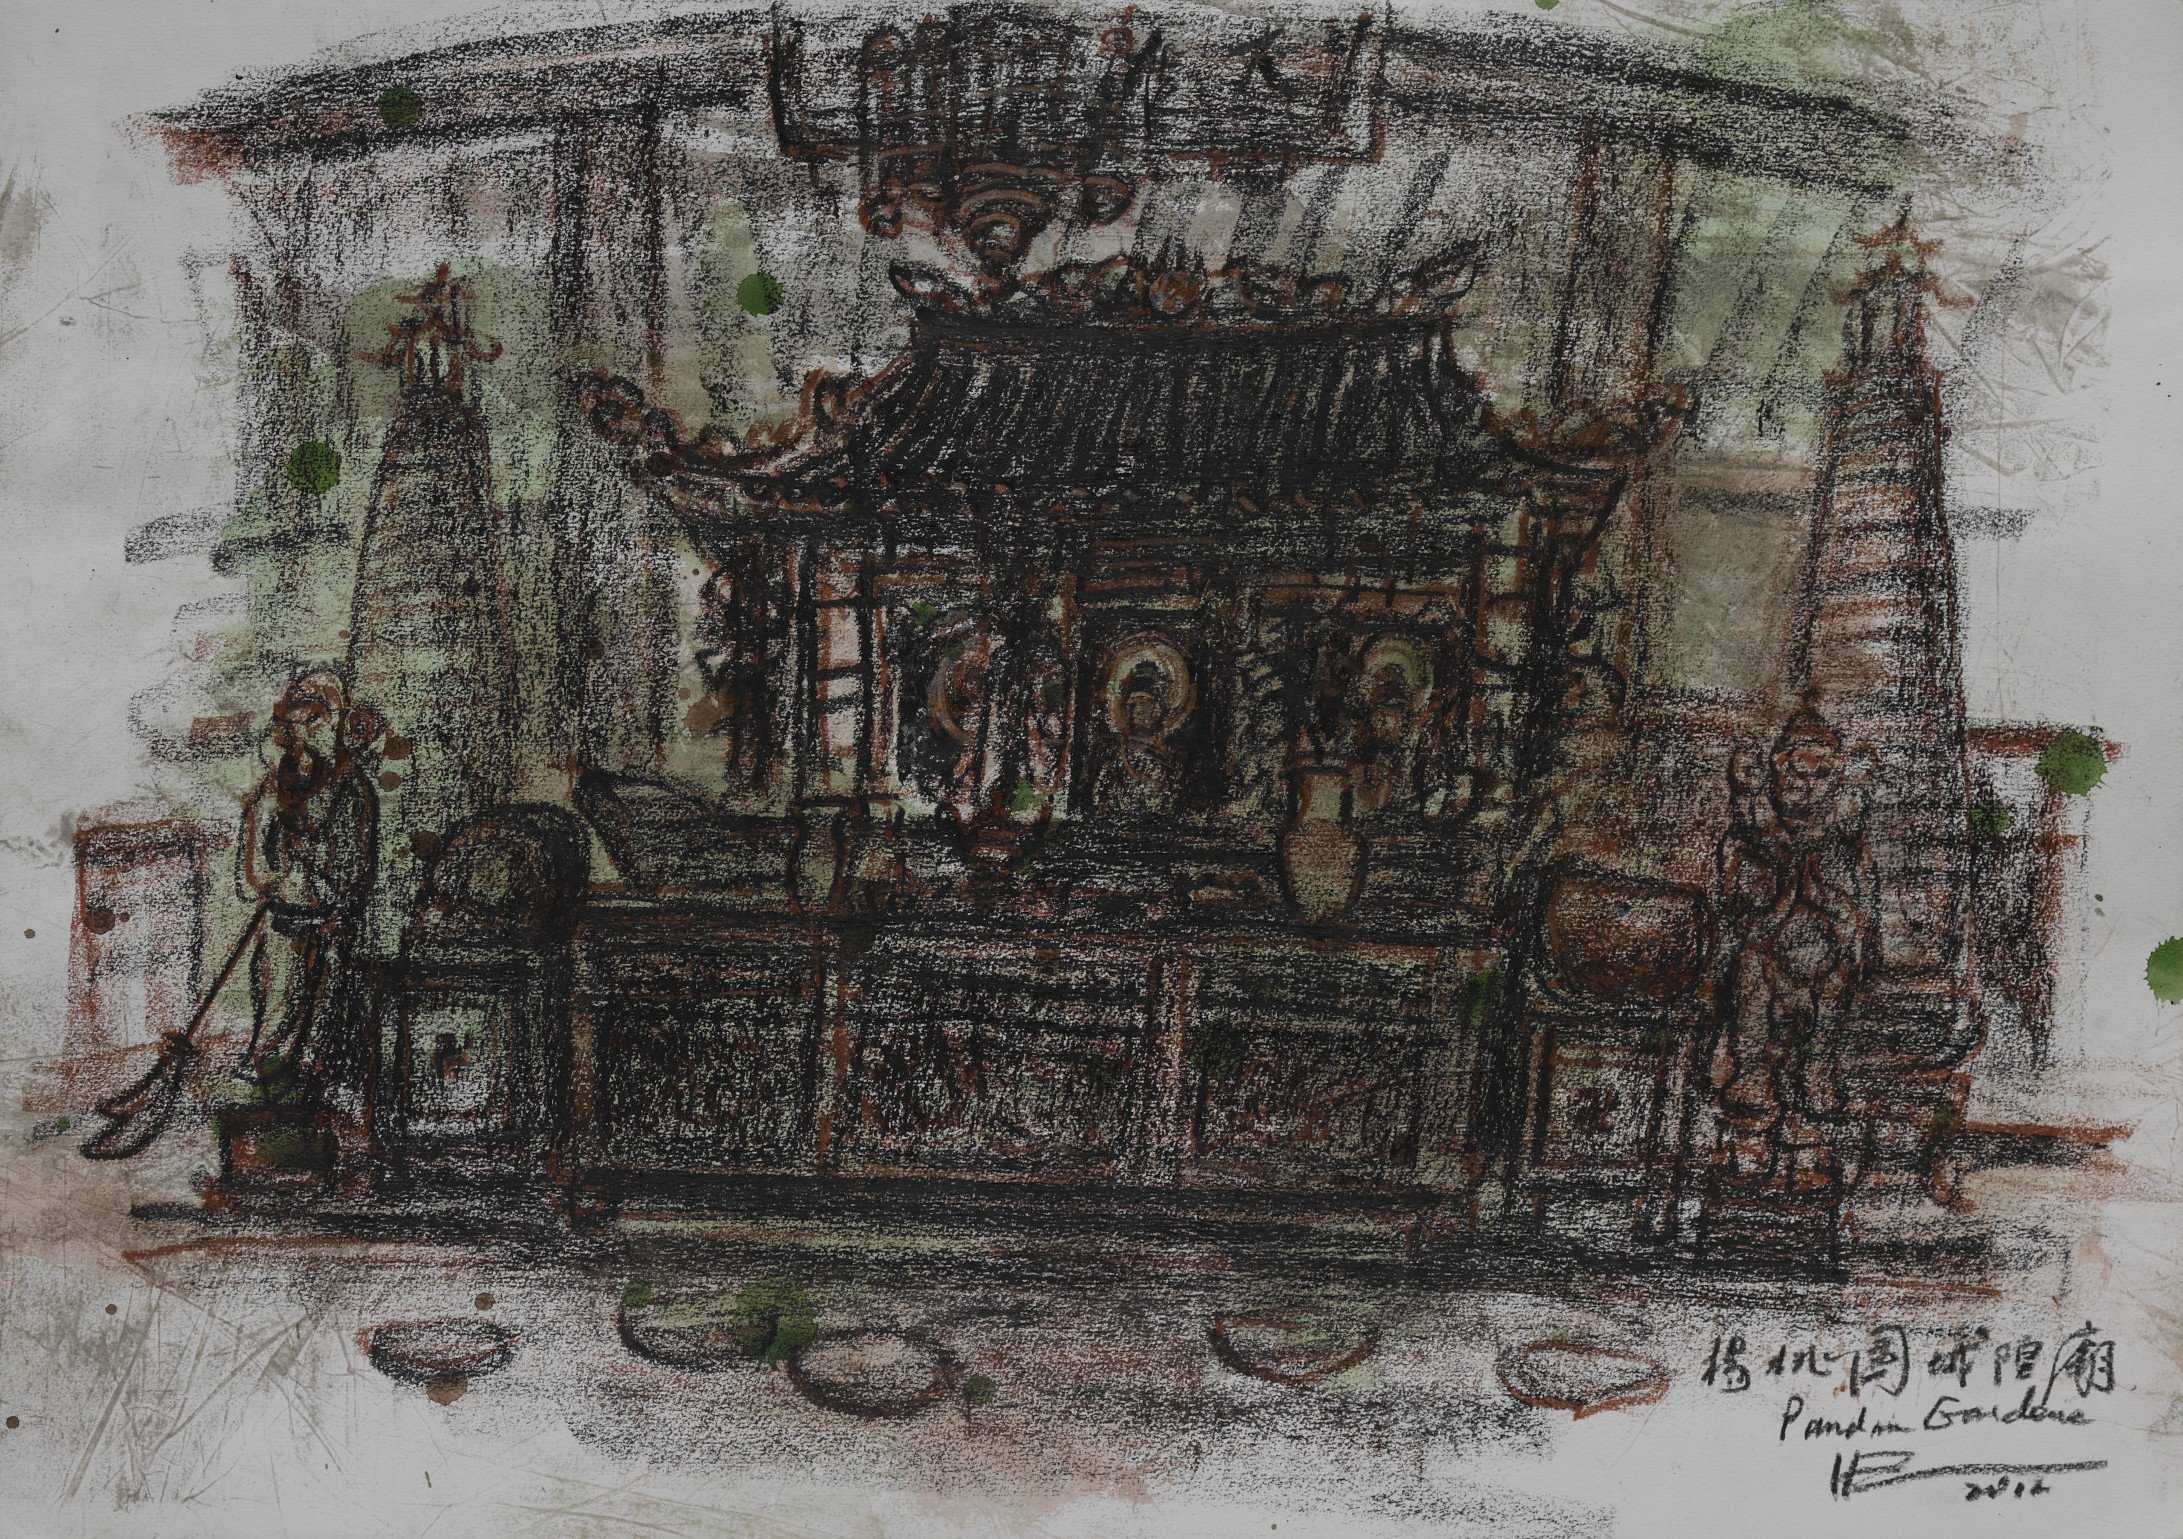 Yang Tao Yuan Sheng Hong Temple